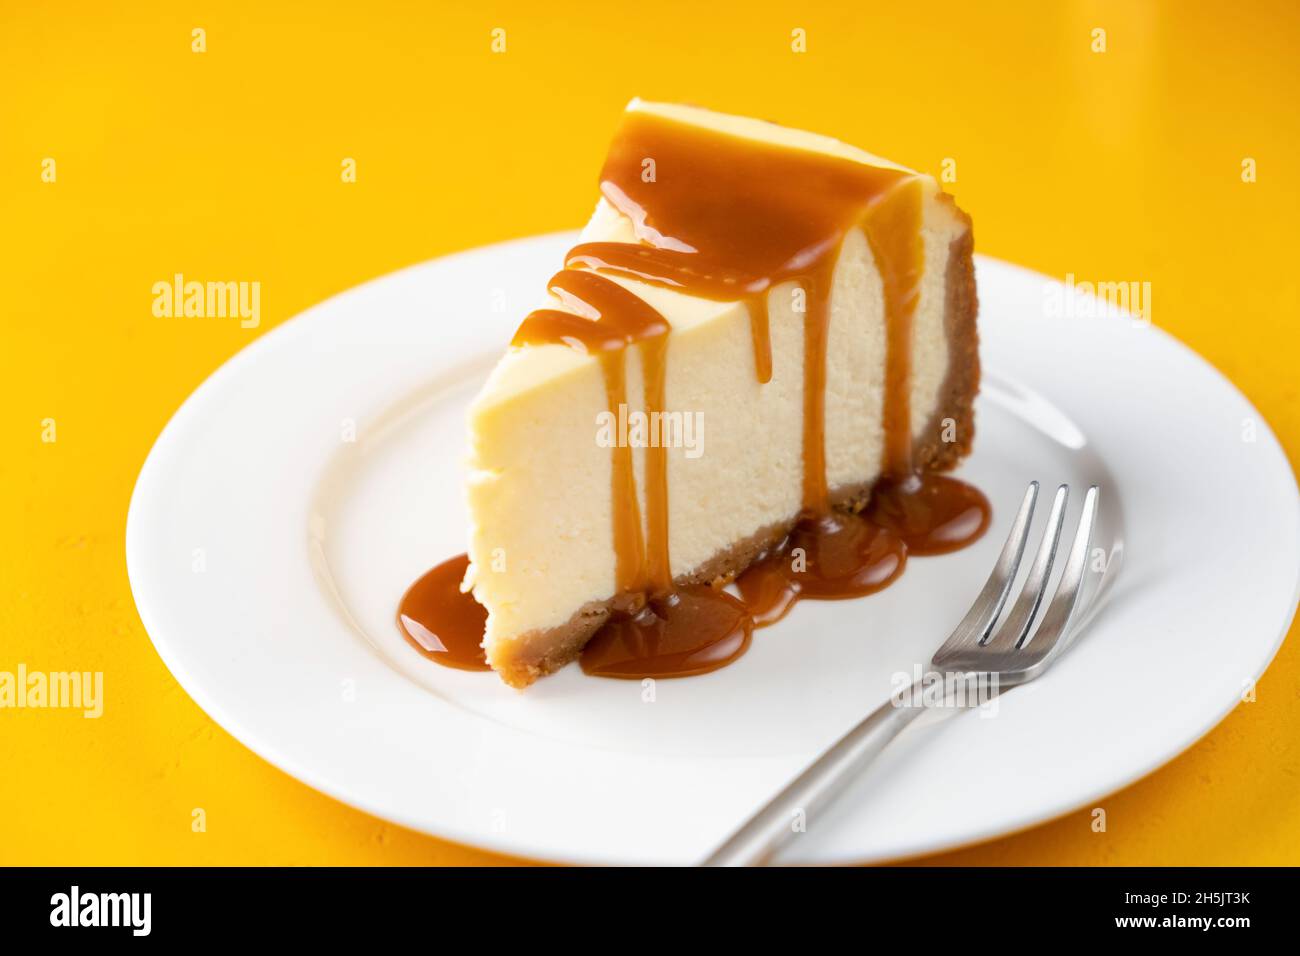 Fetta di cheesecake con salsa al caramello salato sul piatto, isolata su sfondo giallo Foto Stock